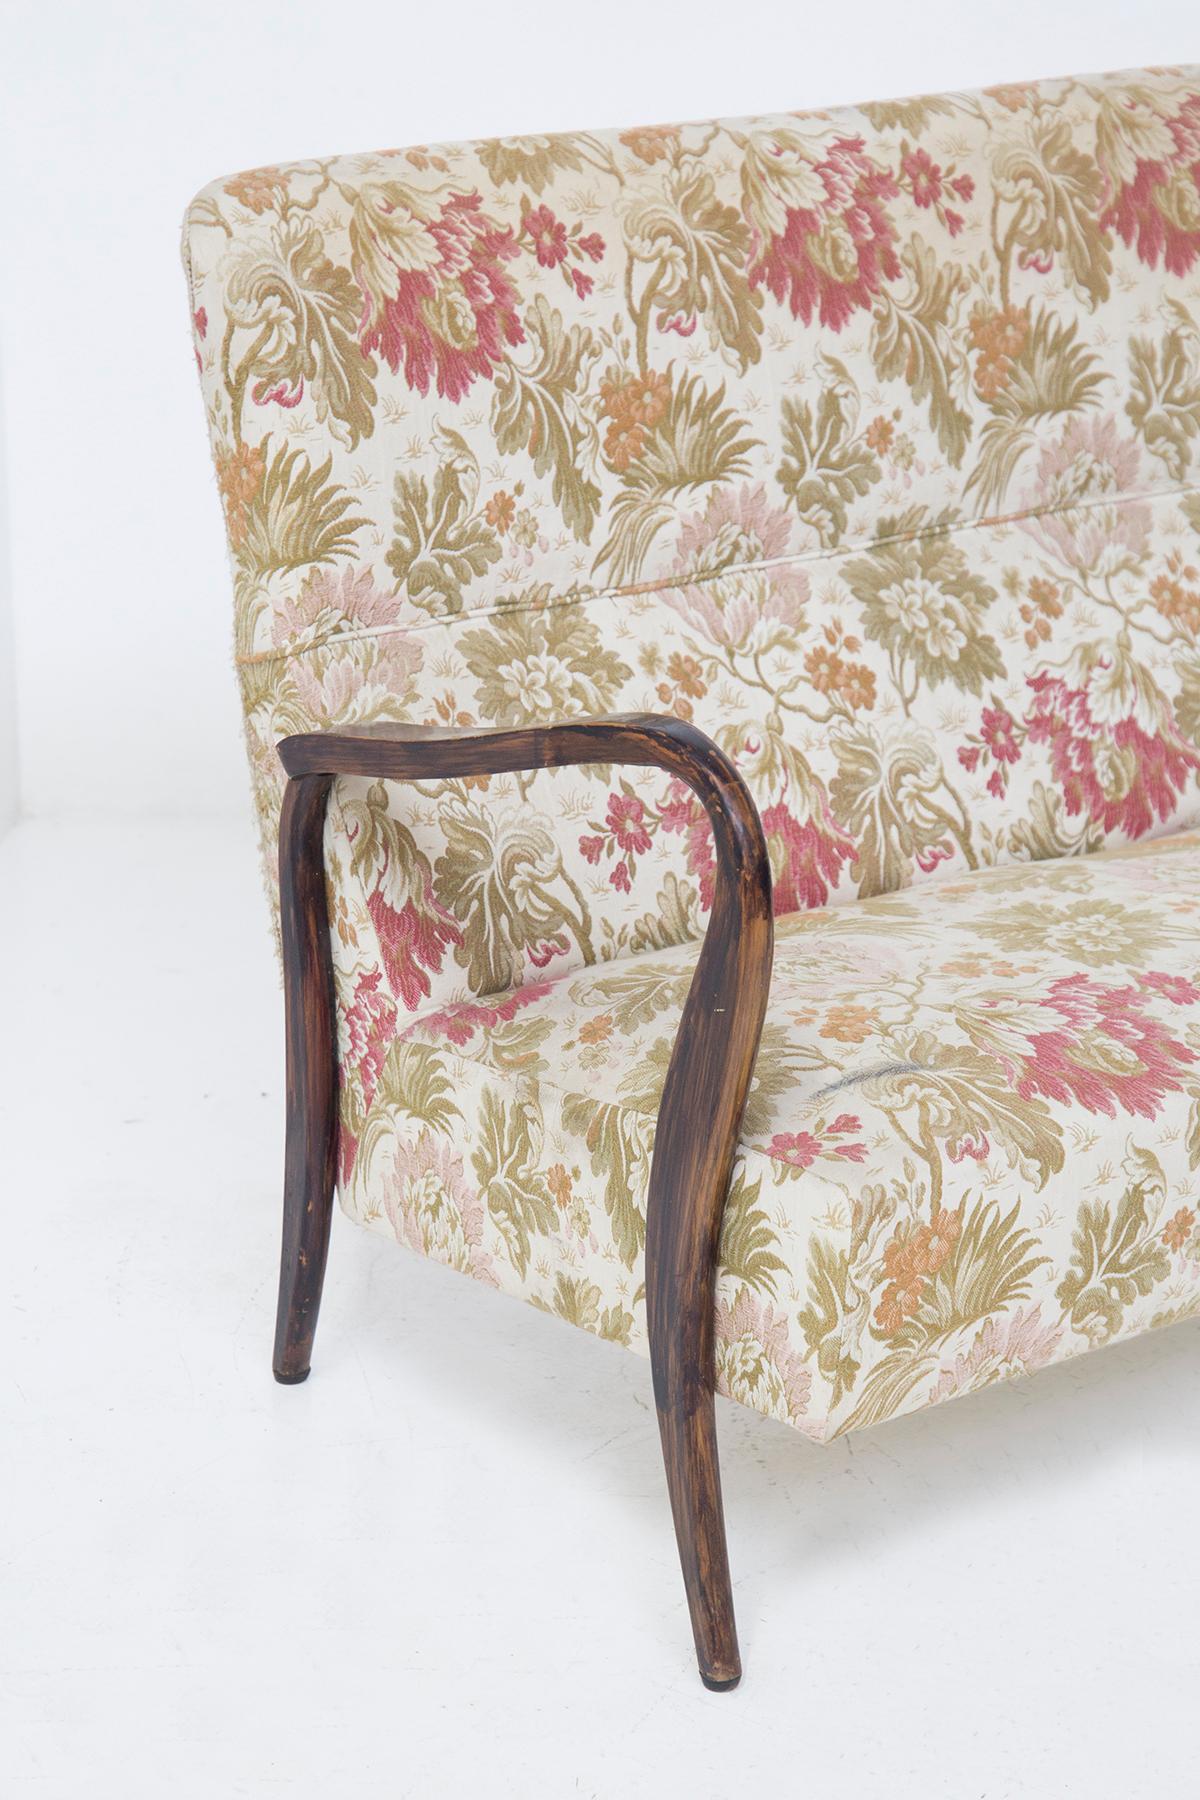 Schönes florales Vintage-Sofa, das in den 1950er Jahren entworfen wurde und der Handwerkskunst von Paolo Buffa zugeschrieben wird, aus feiner italienischer Fertigung.
Das Sofa hat ein sehr elegantes Gestell aus dunklem Edelholz, die Stützbeine sind